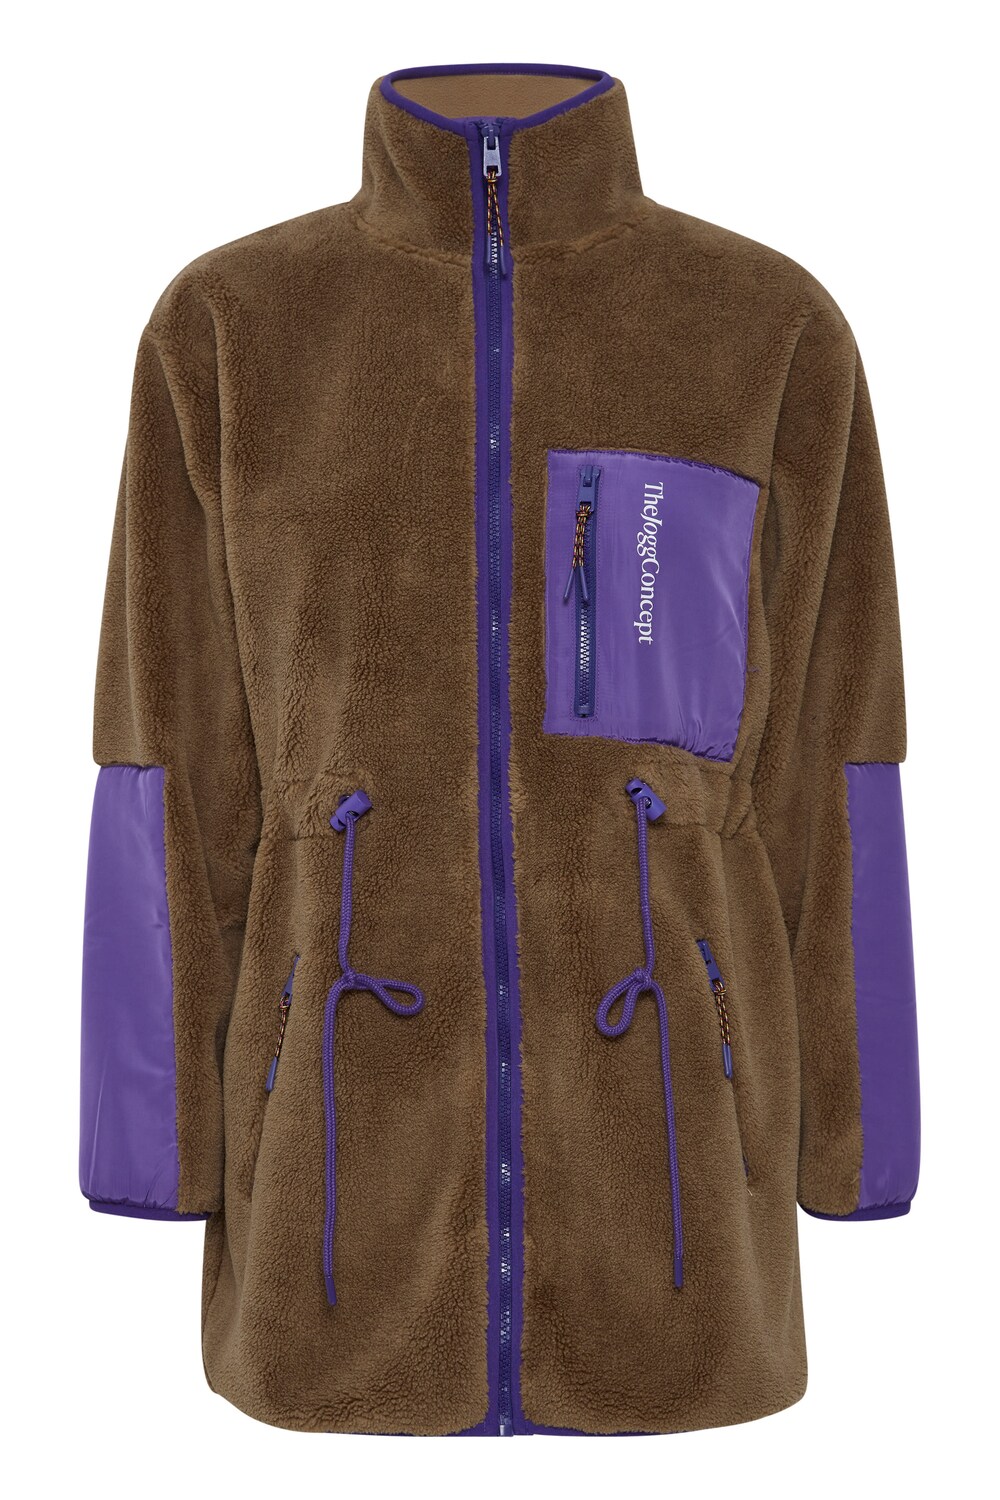 Зимняя куртка The Jogg Concept, коричневый